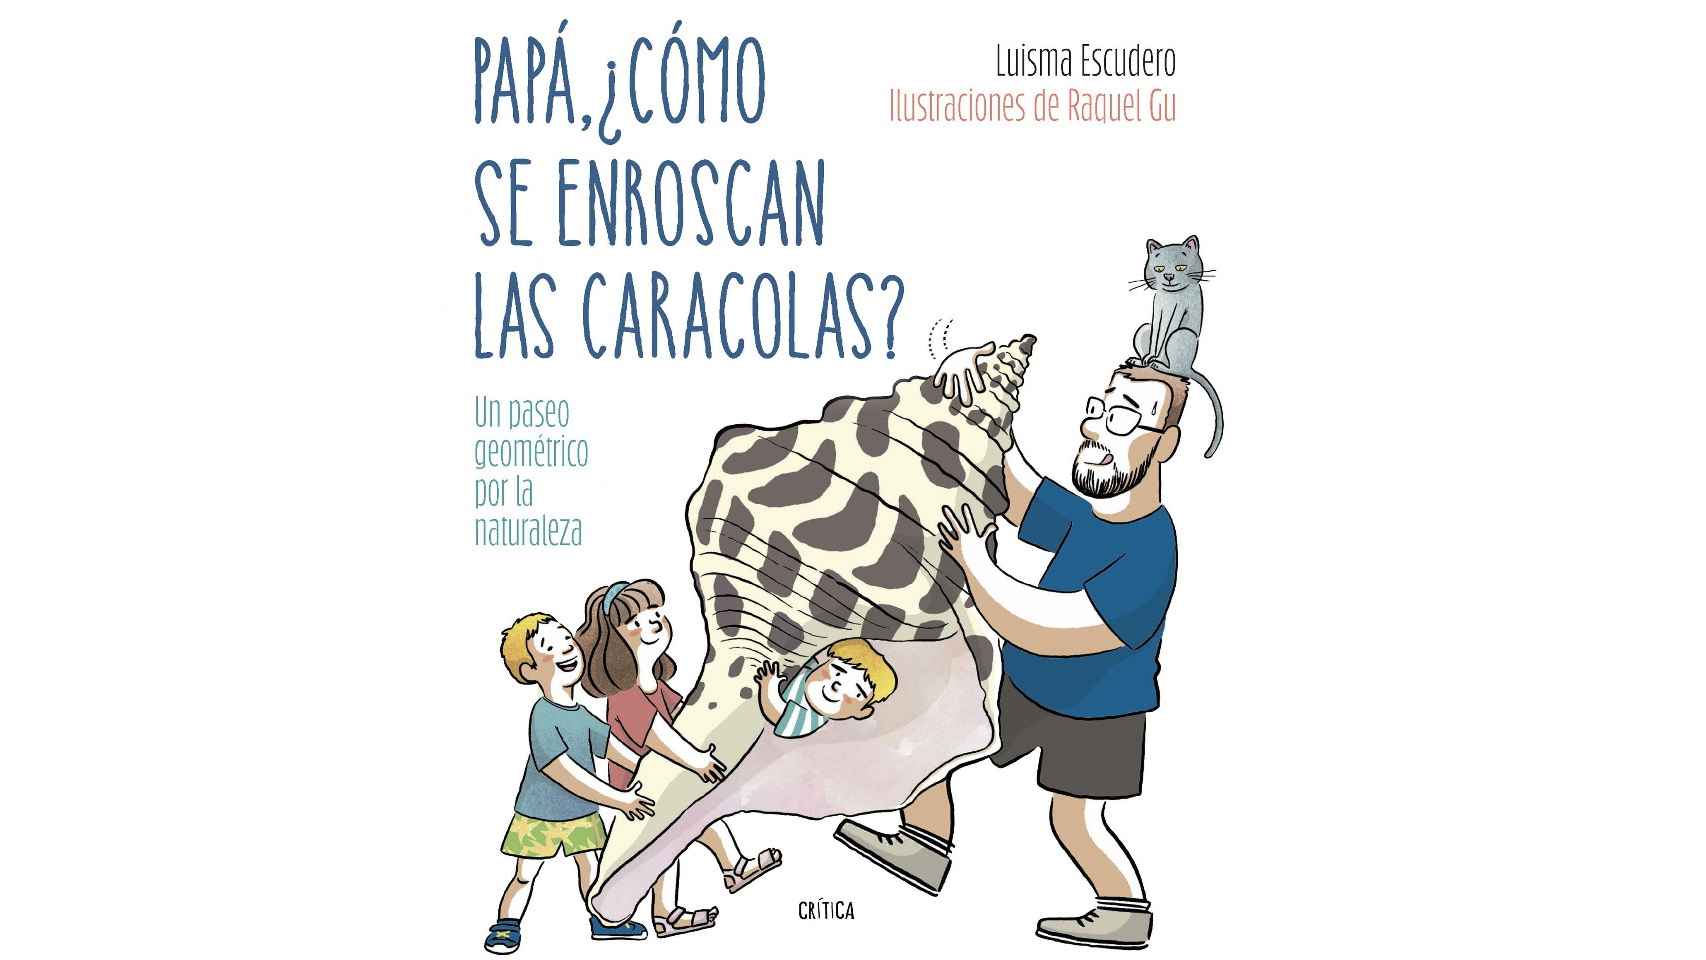 La portada del libro 'Papá, ¿Cómo se enroscan las caracolas?' de Luisma Escudero y Raquel Gu.